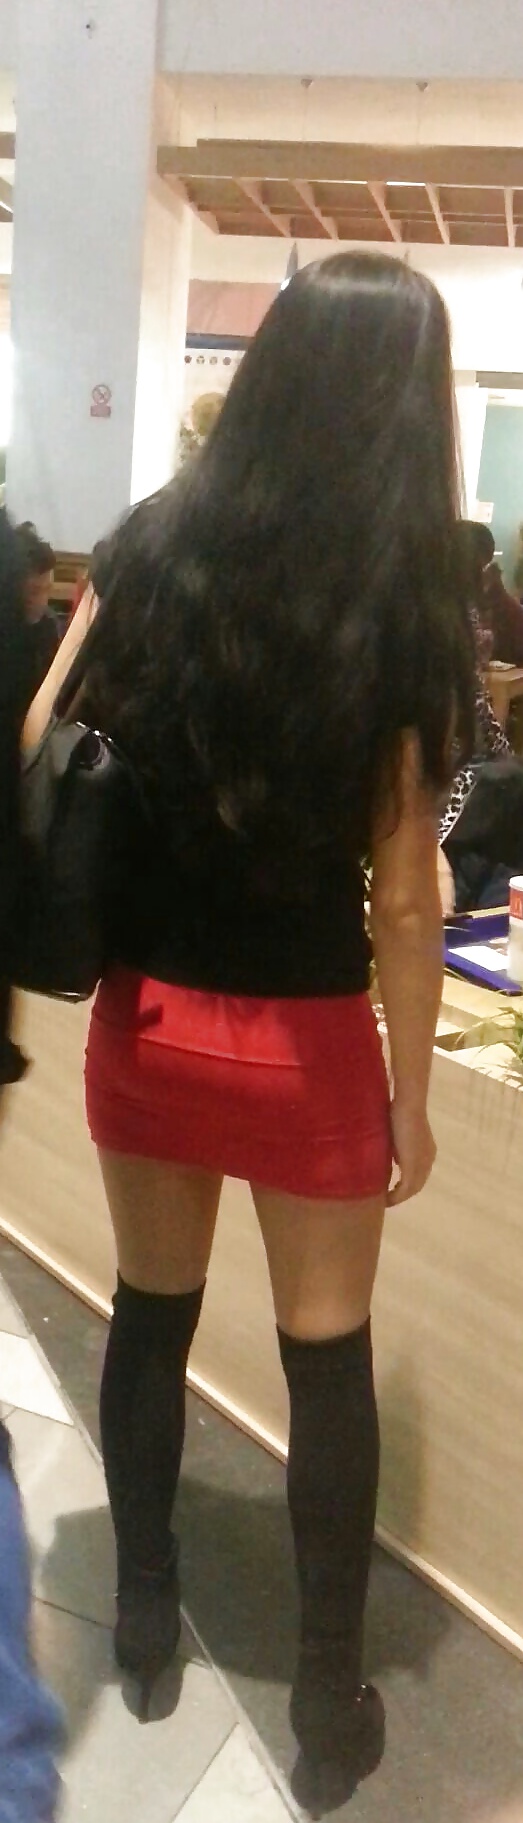 jeunes Sexy Espion Mini-jupe En Centre Commercial Romanian #39540235